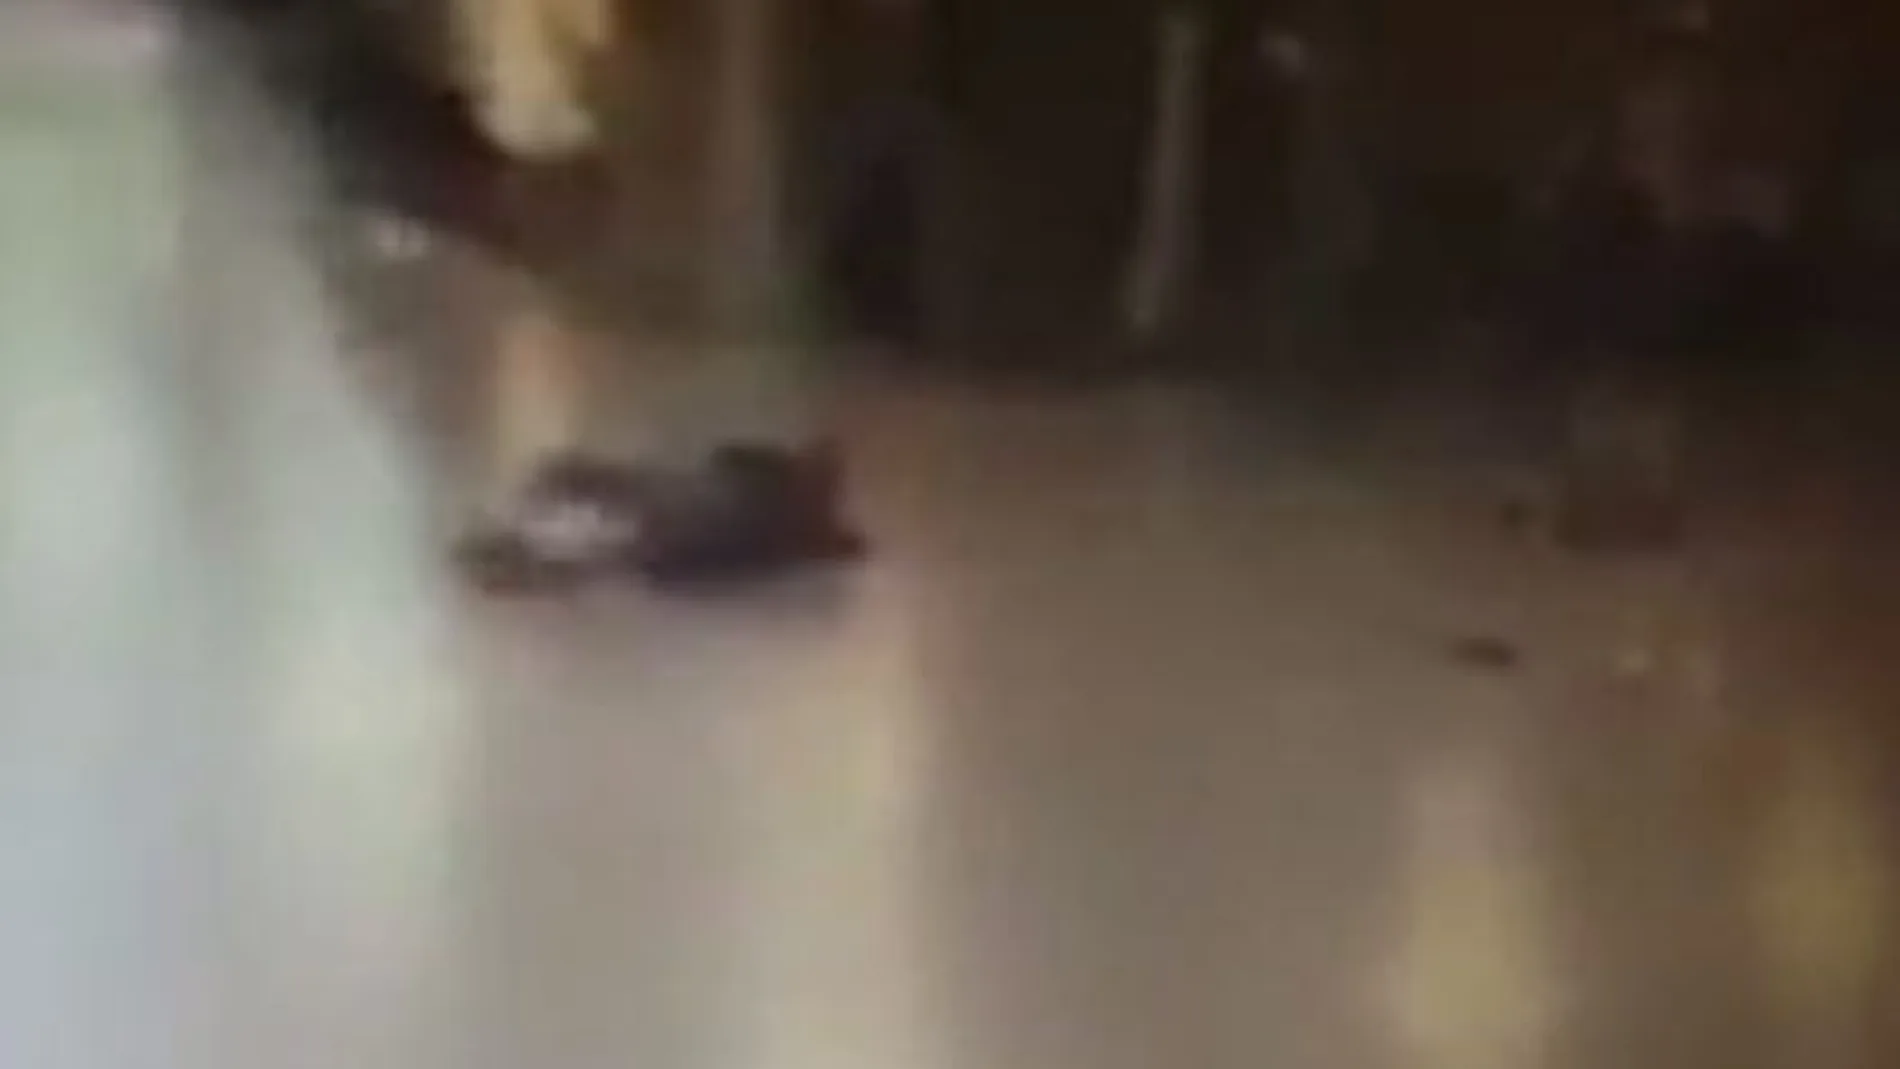 Captura del vídeo que muestra a uno de los kamikazes tirado en el suelo